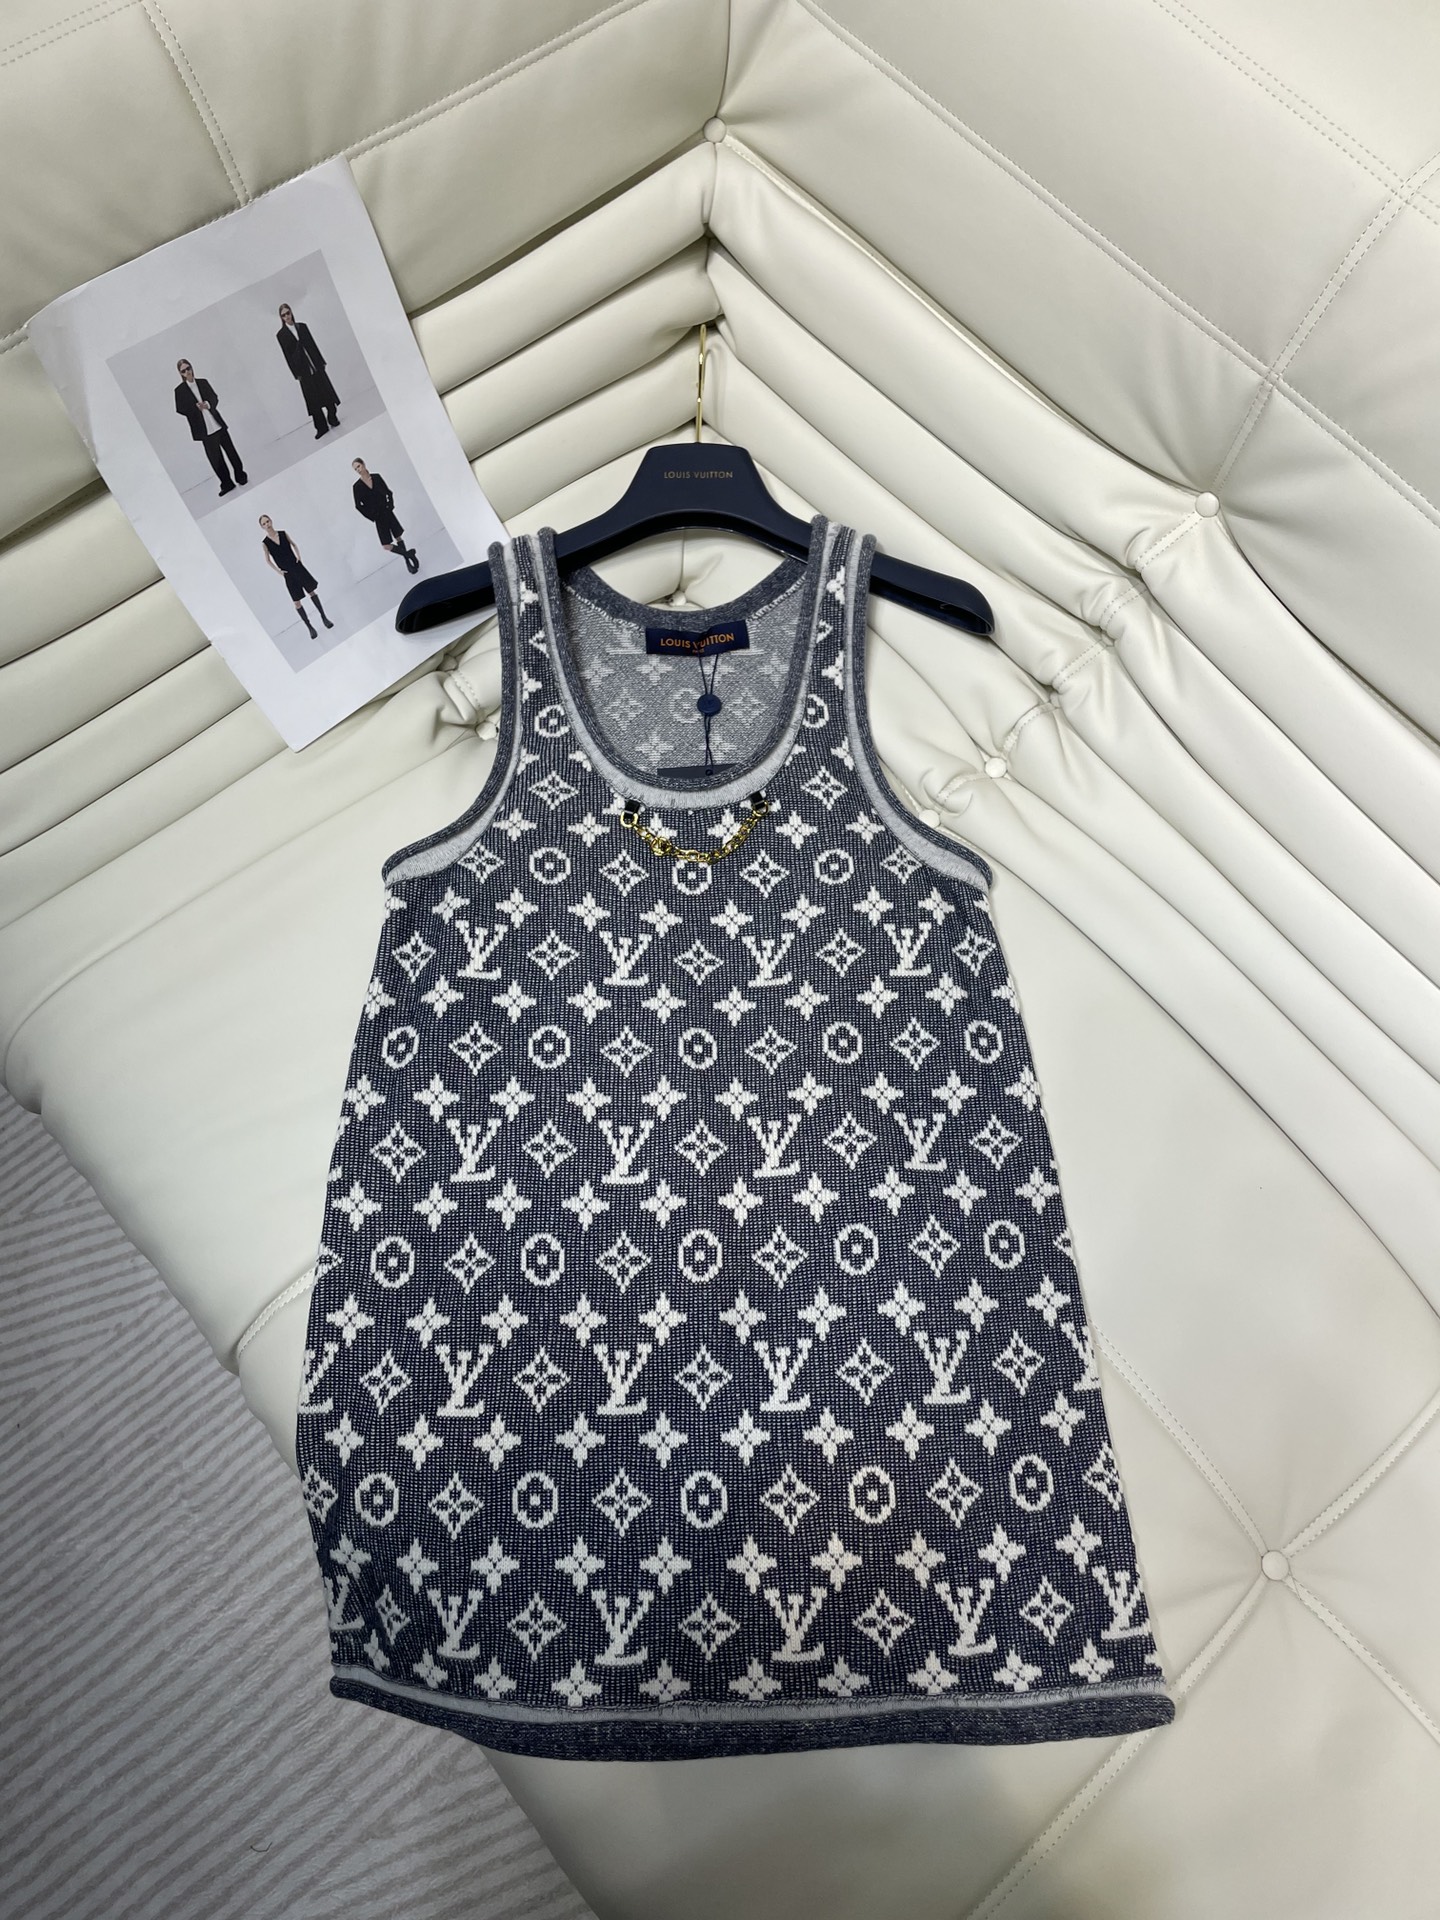 Louis Vuitton Clothing Sweatshirts Tank Tops&Camis Knitting